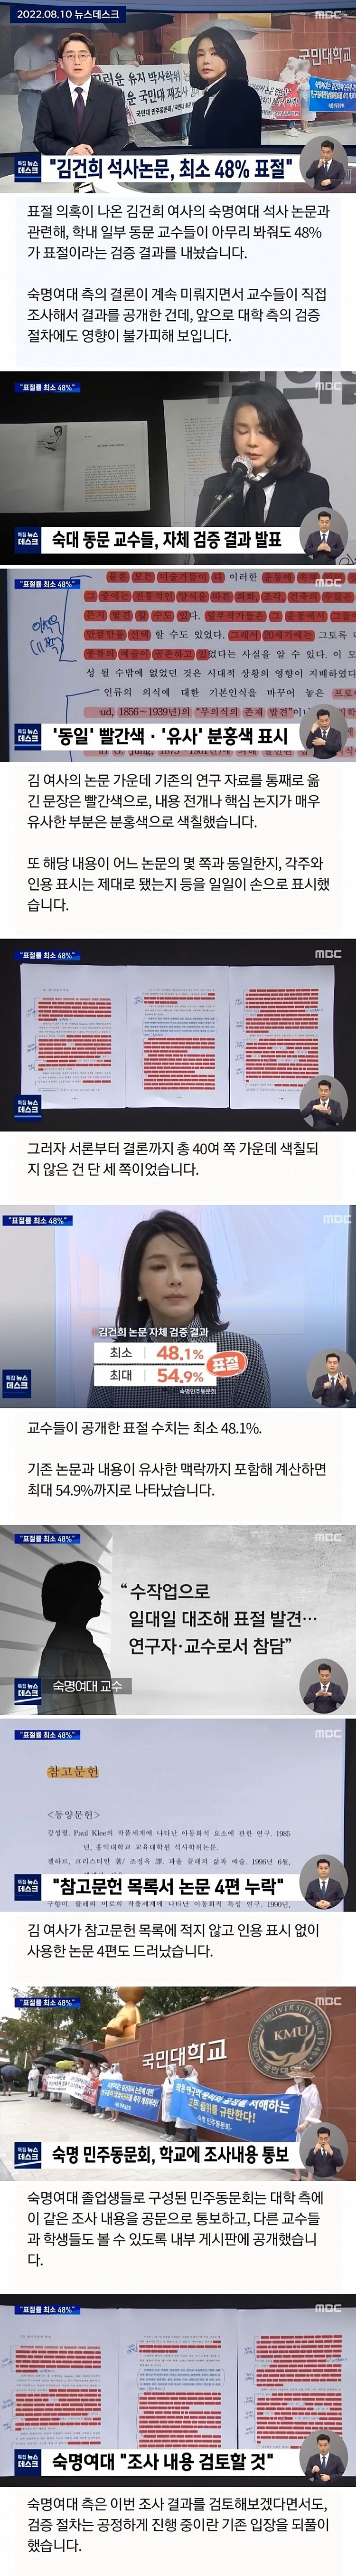 김건희 여사의 숙명여대 석사 논문도 위험